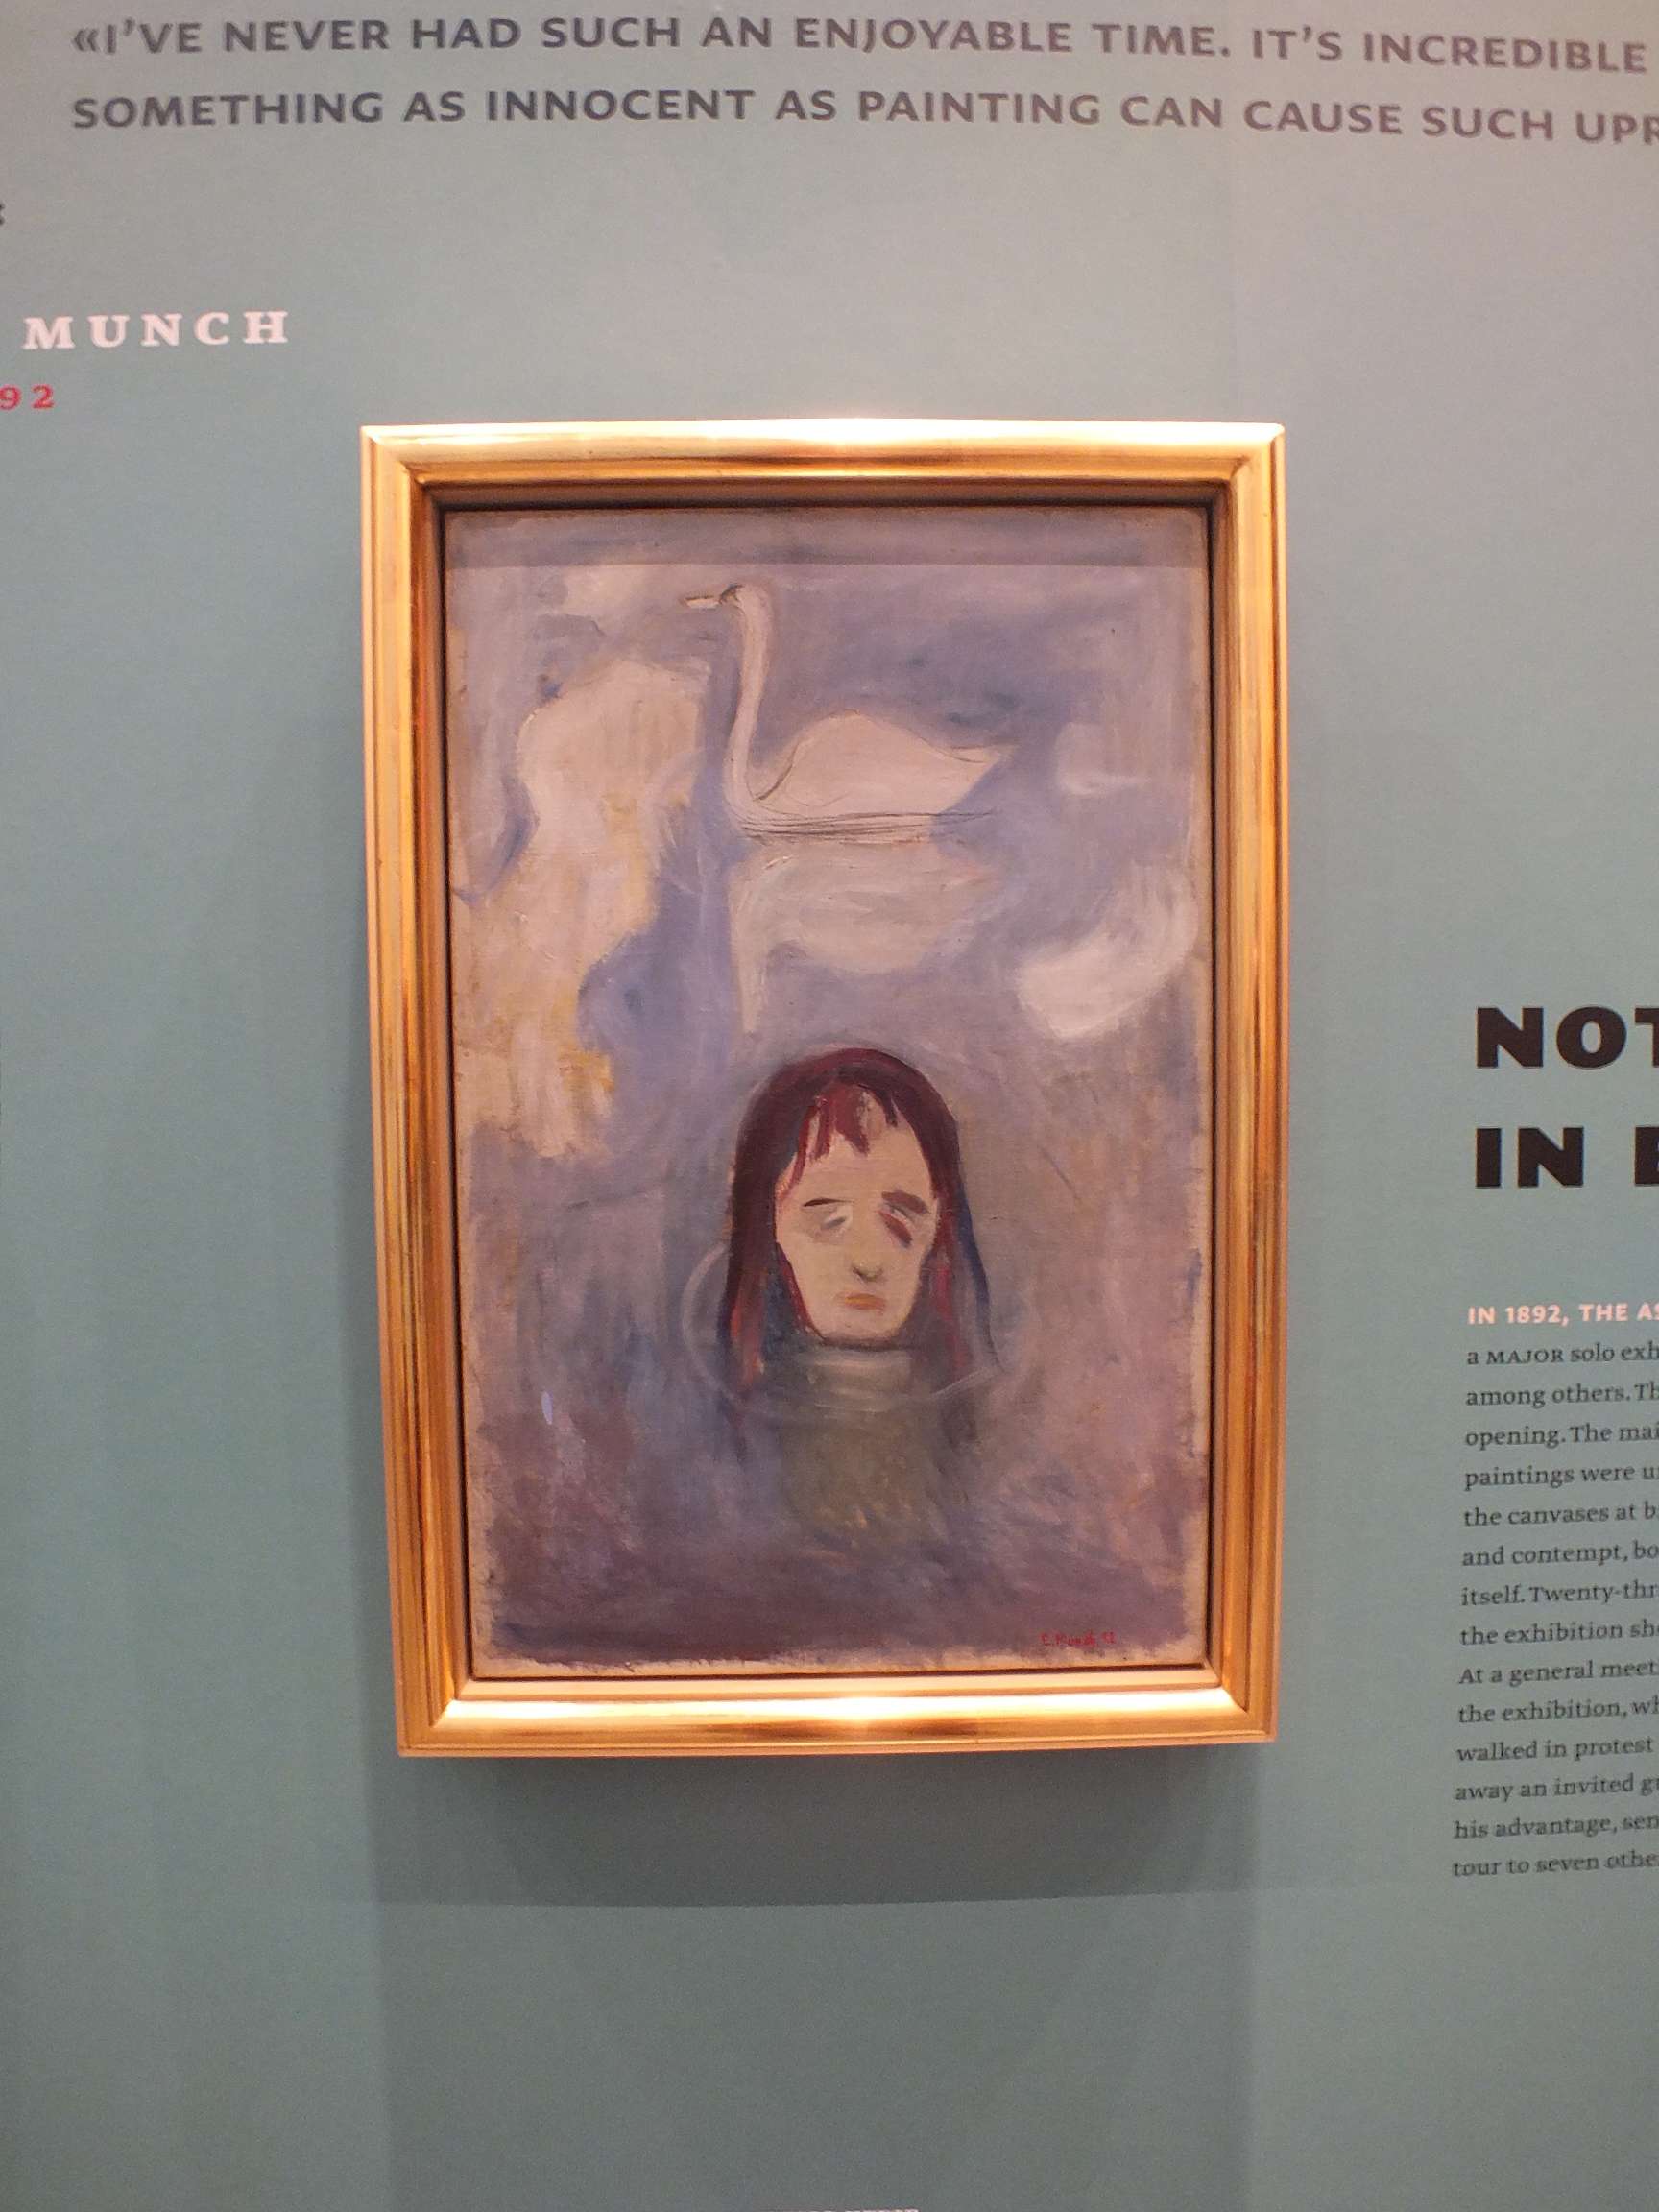 Munch Müzesi (Munchmuseet)